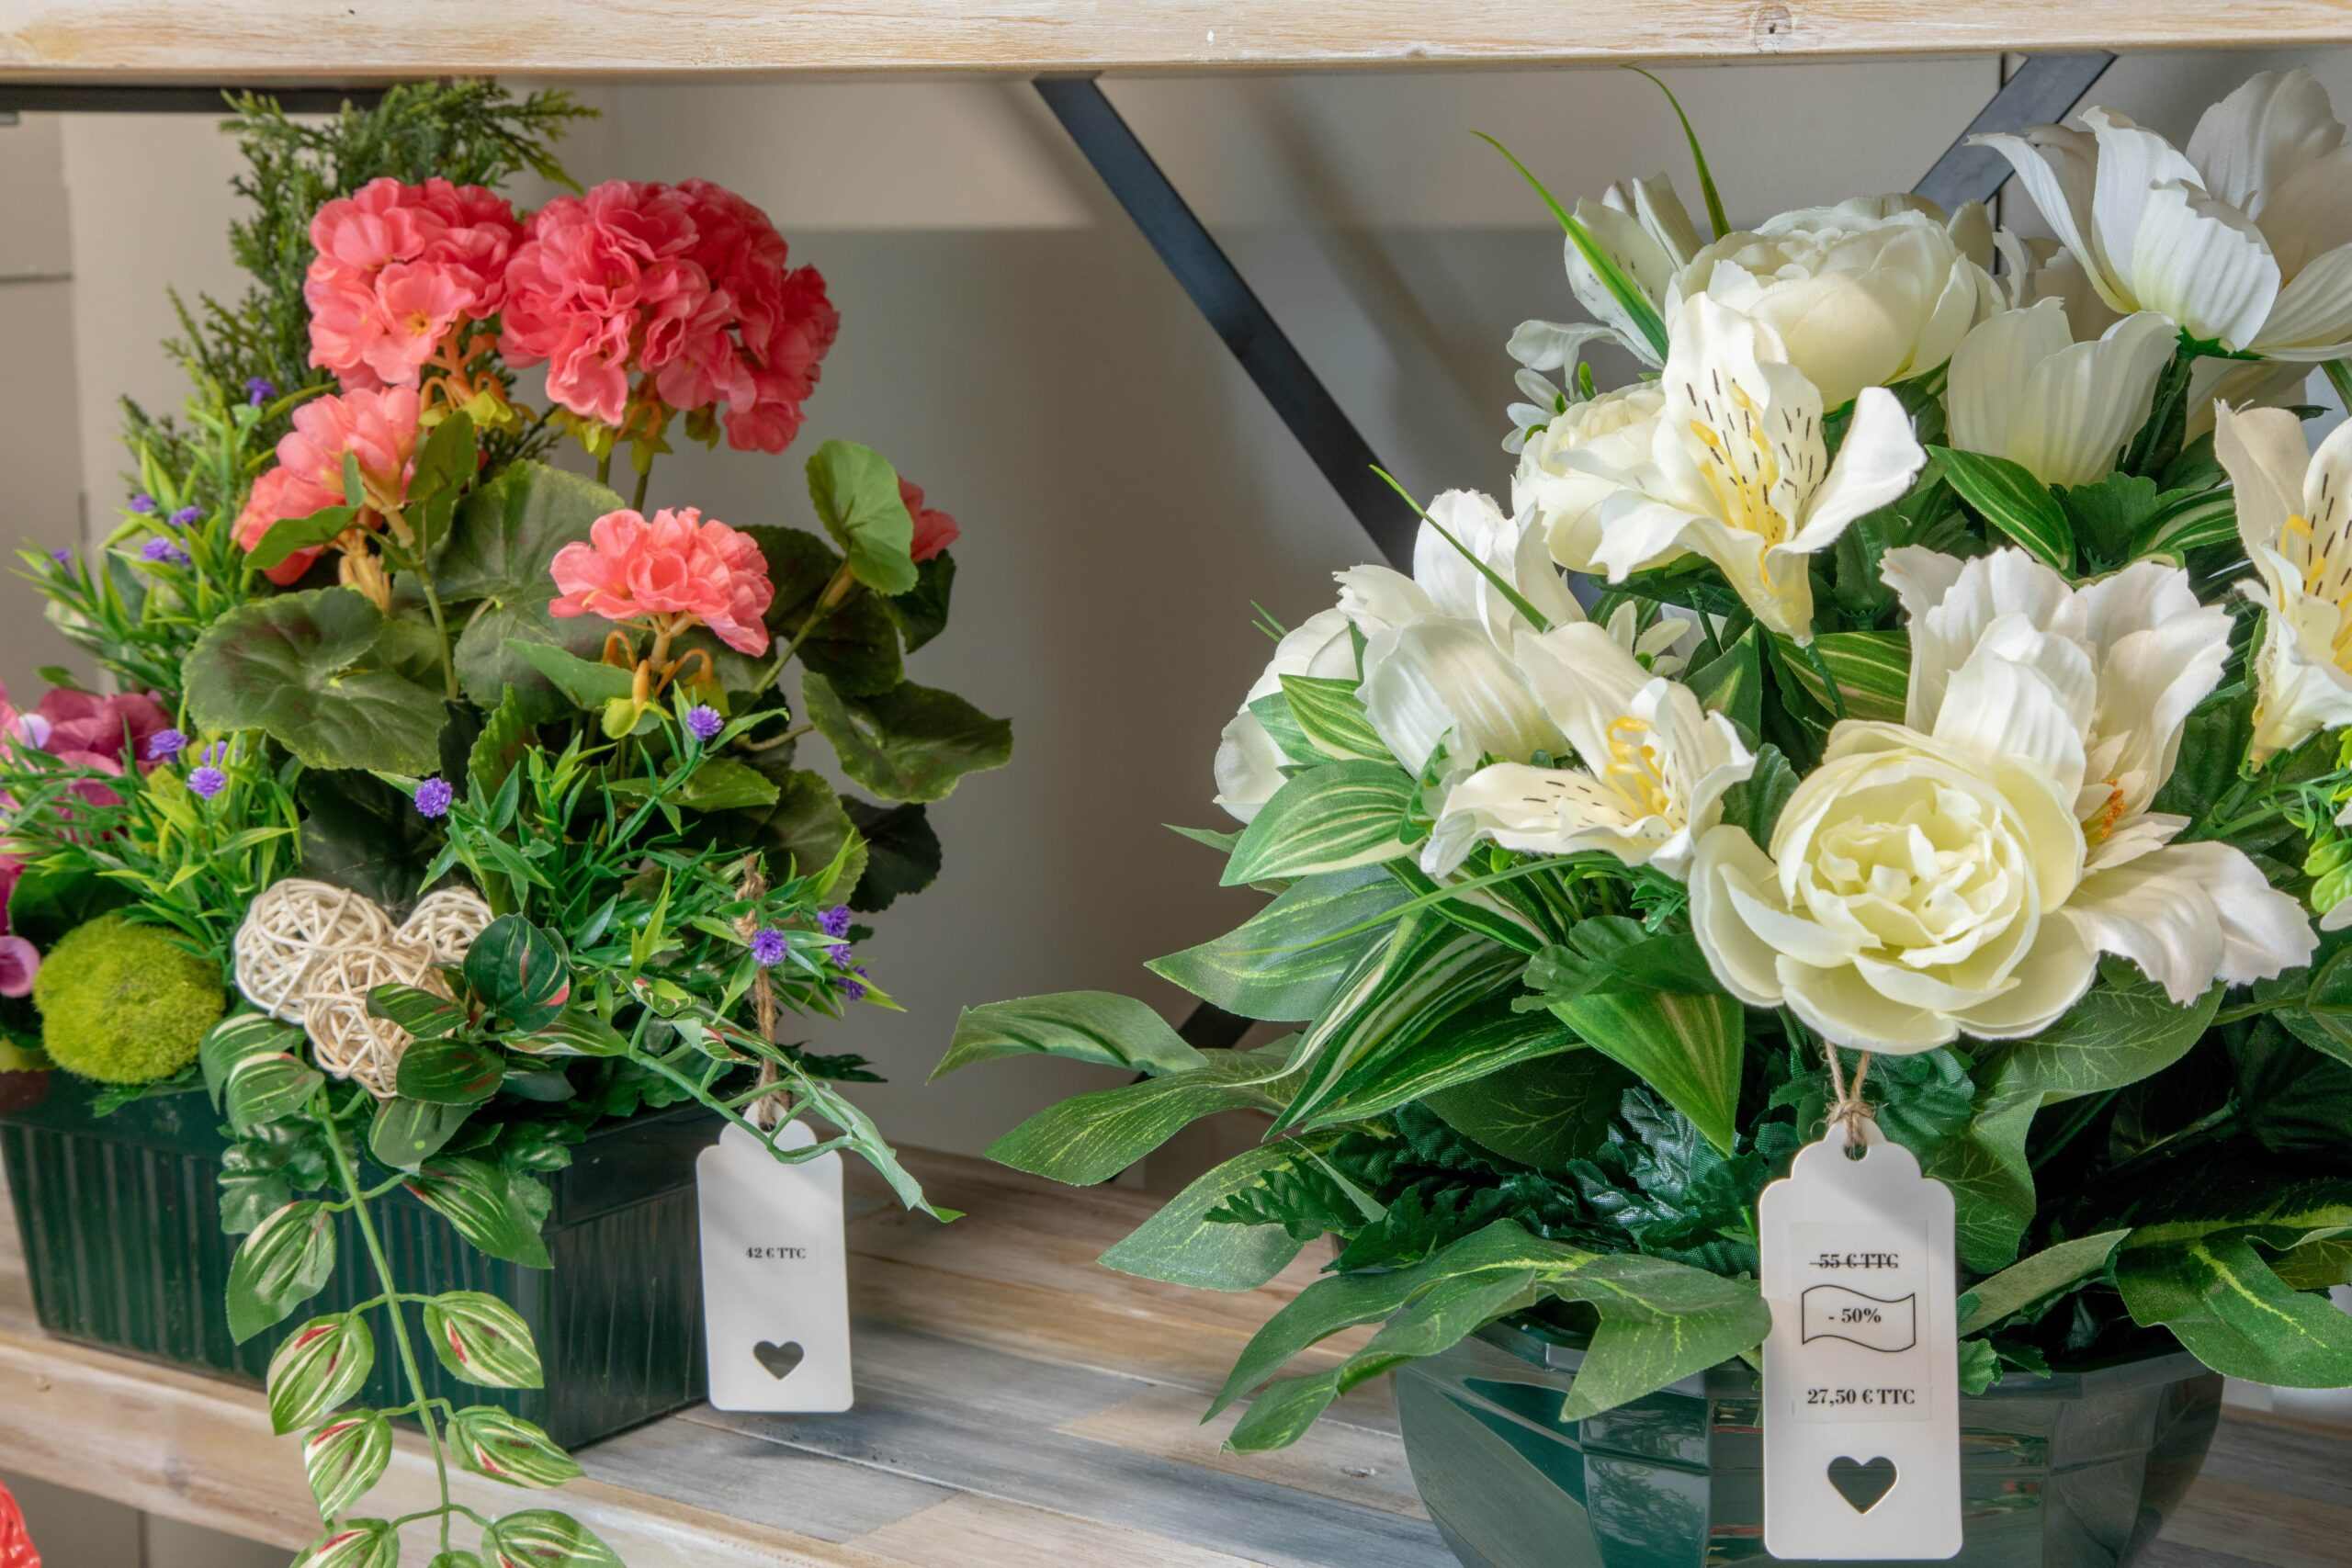 fleurs au magasin funeraire